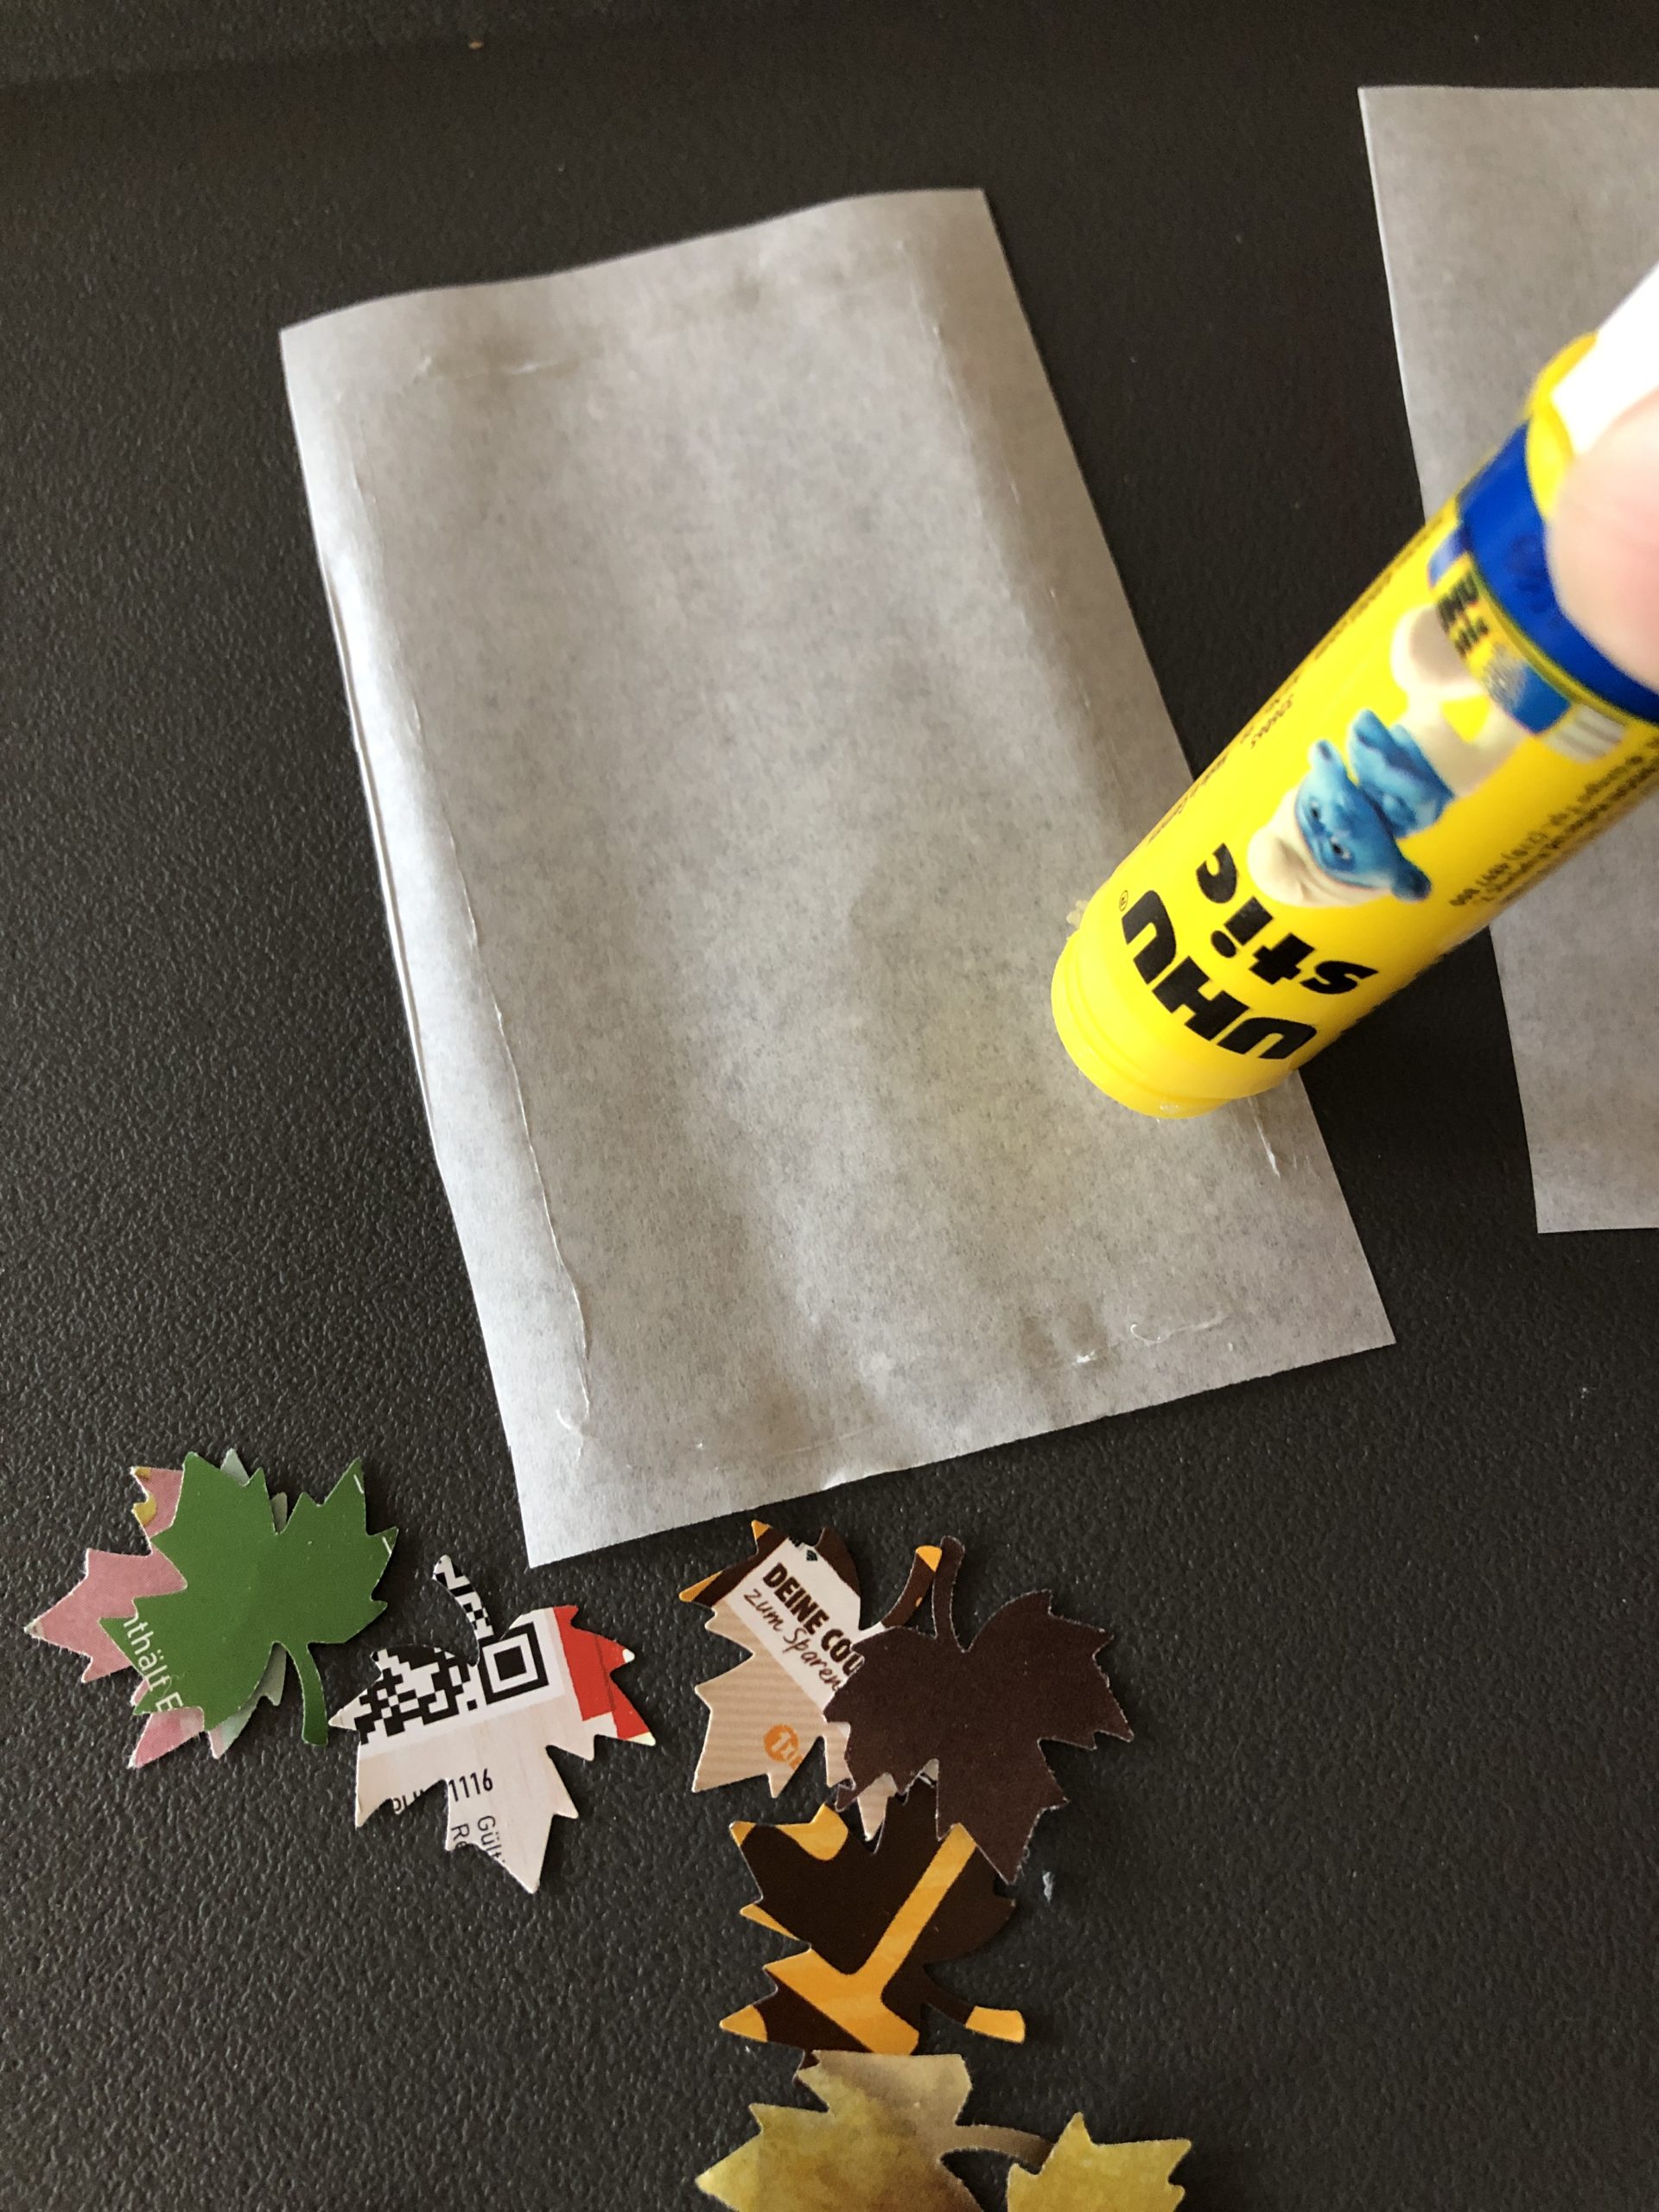 Bild zum Schritt 13 für das Bastel- und DIY-Abenteuer für Kinder: 'Bestreicht die Ränder der Butterbrotpapier-Zuschnitte mit Kleber und befestigt sie...'